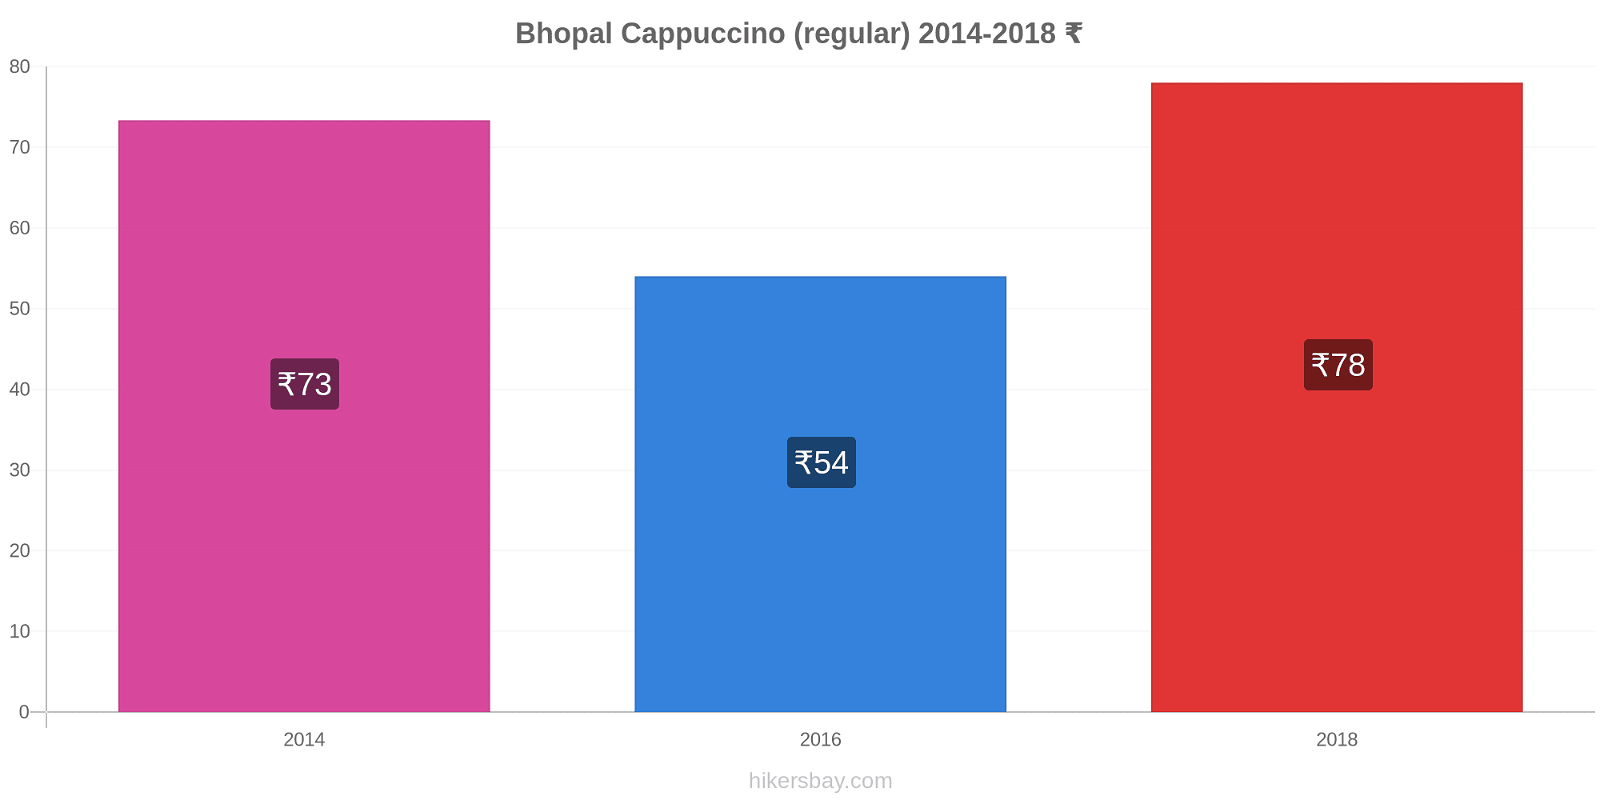 Bhopal price changes Cappuccino (regular) hikersbay.com